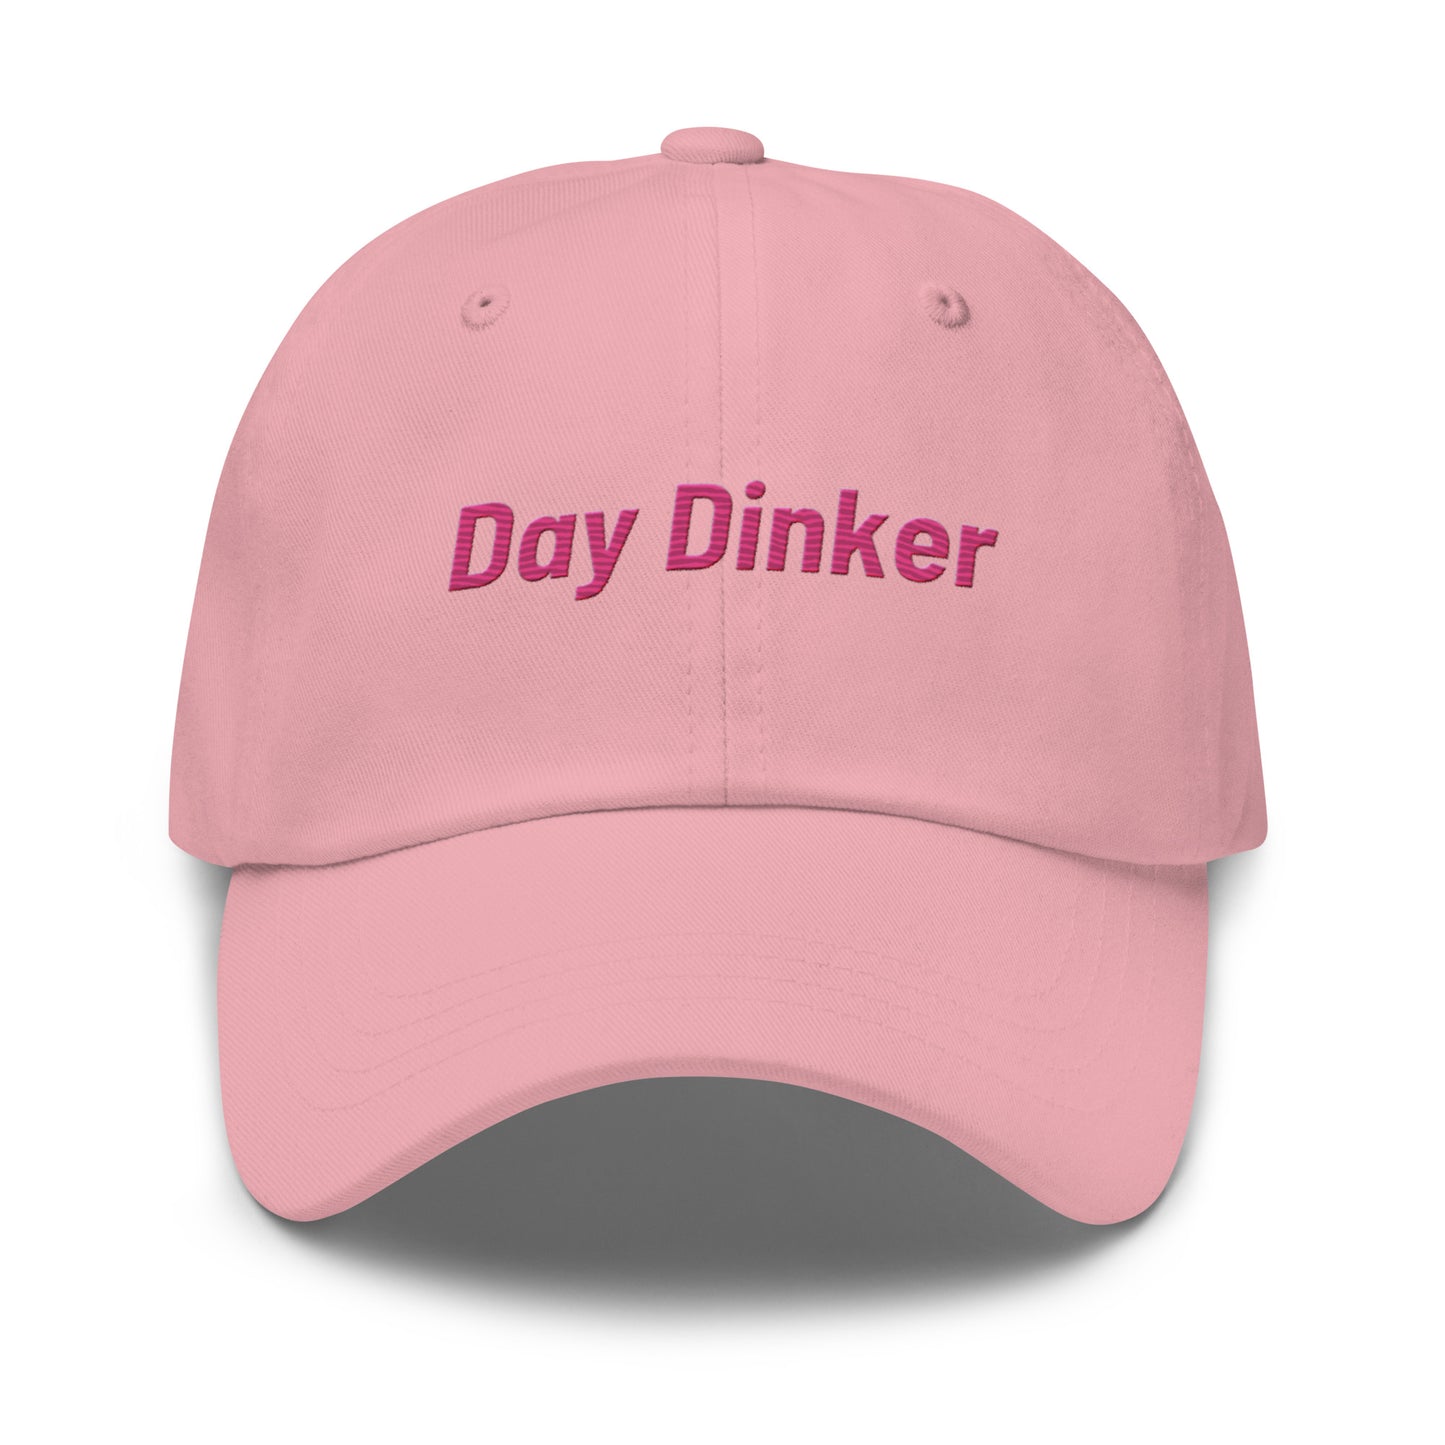 "DAY DINKER" PICKLEBALL DAD HAT PINK